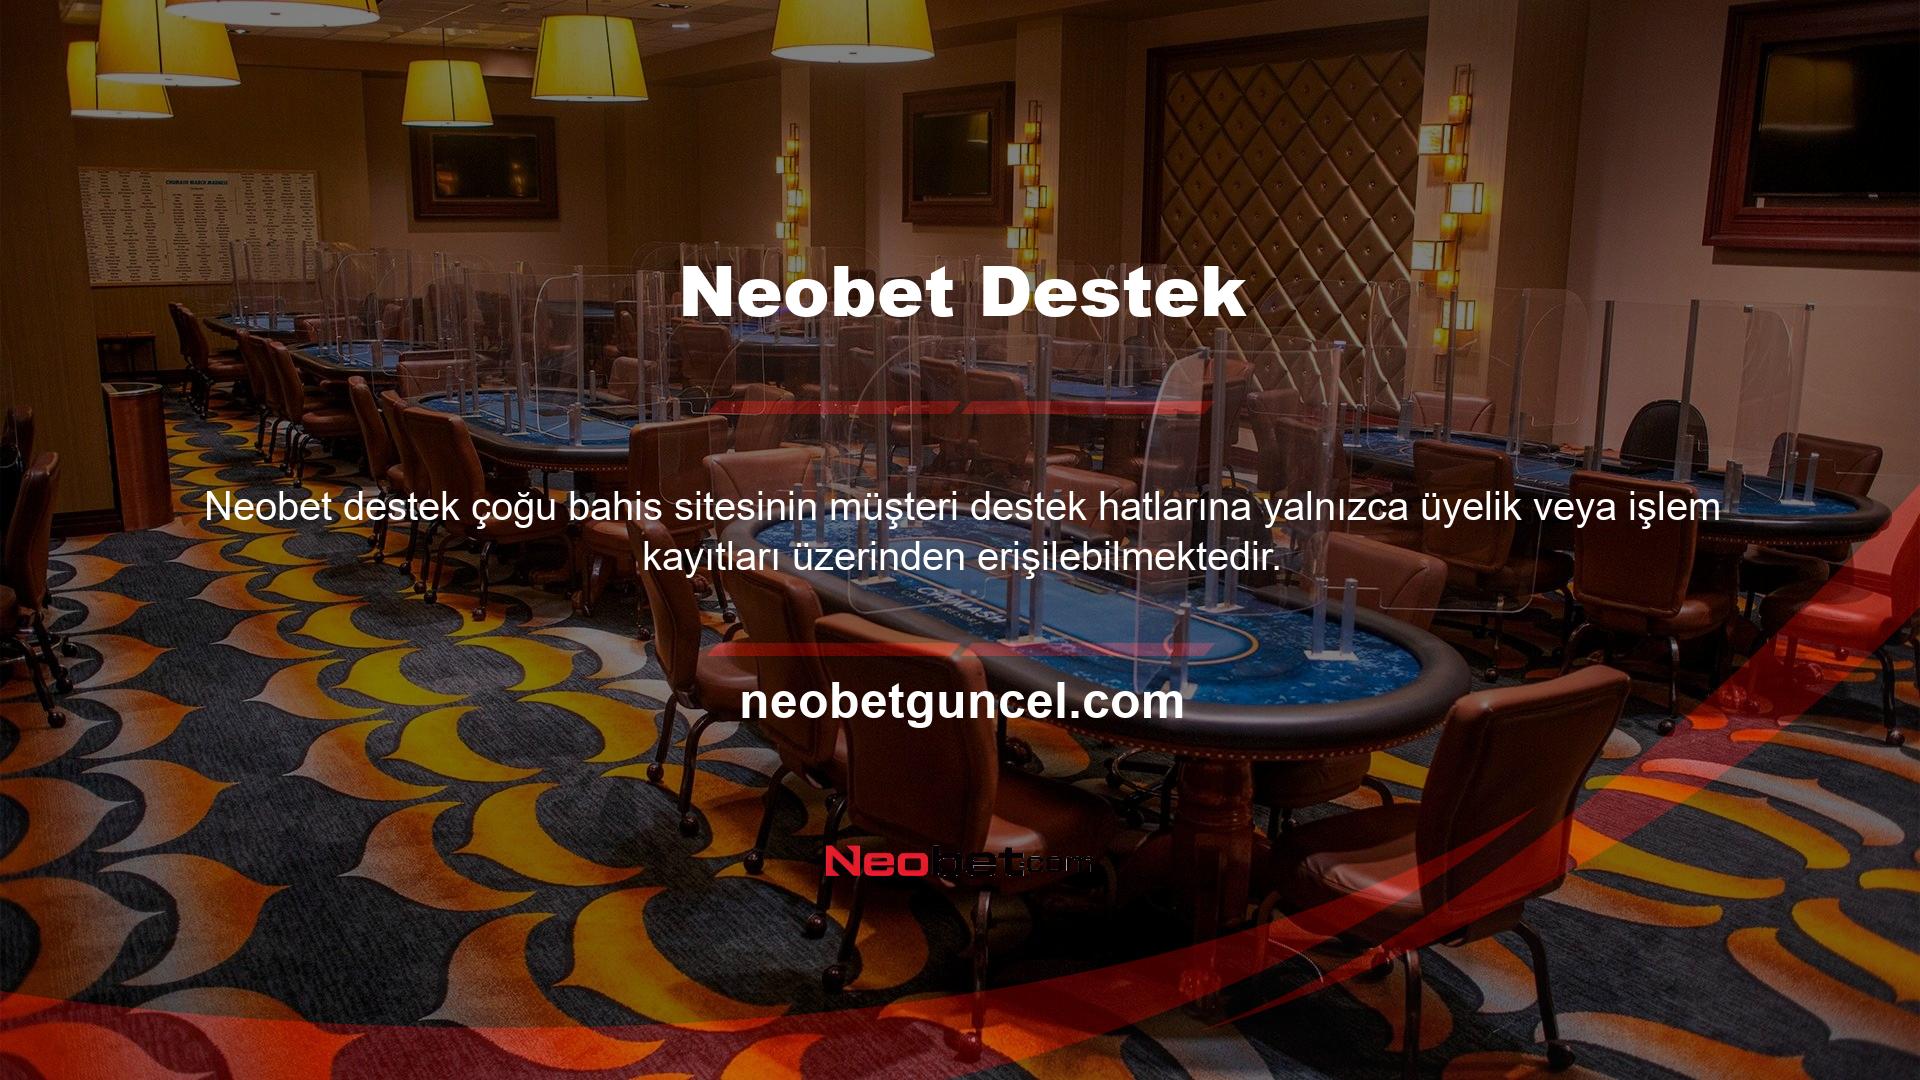 Neobet web sitesi üyelik ücreti de almıyor ve en basit canlı izleme özelliği bile bir müşteri hizmetleri temsilcisine bağlanmanıza olanak tanıyor